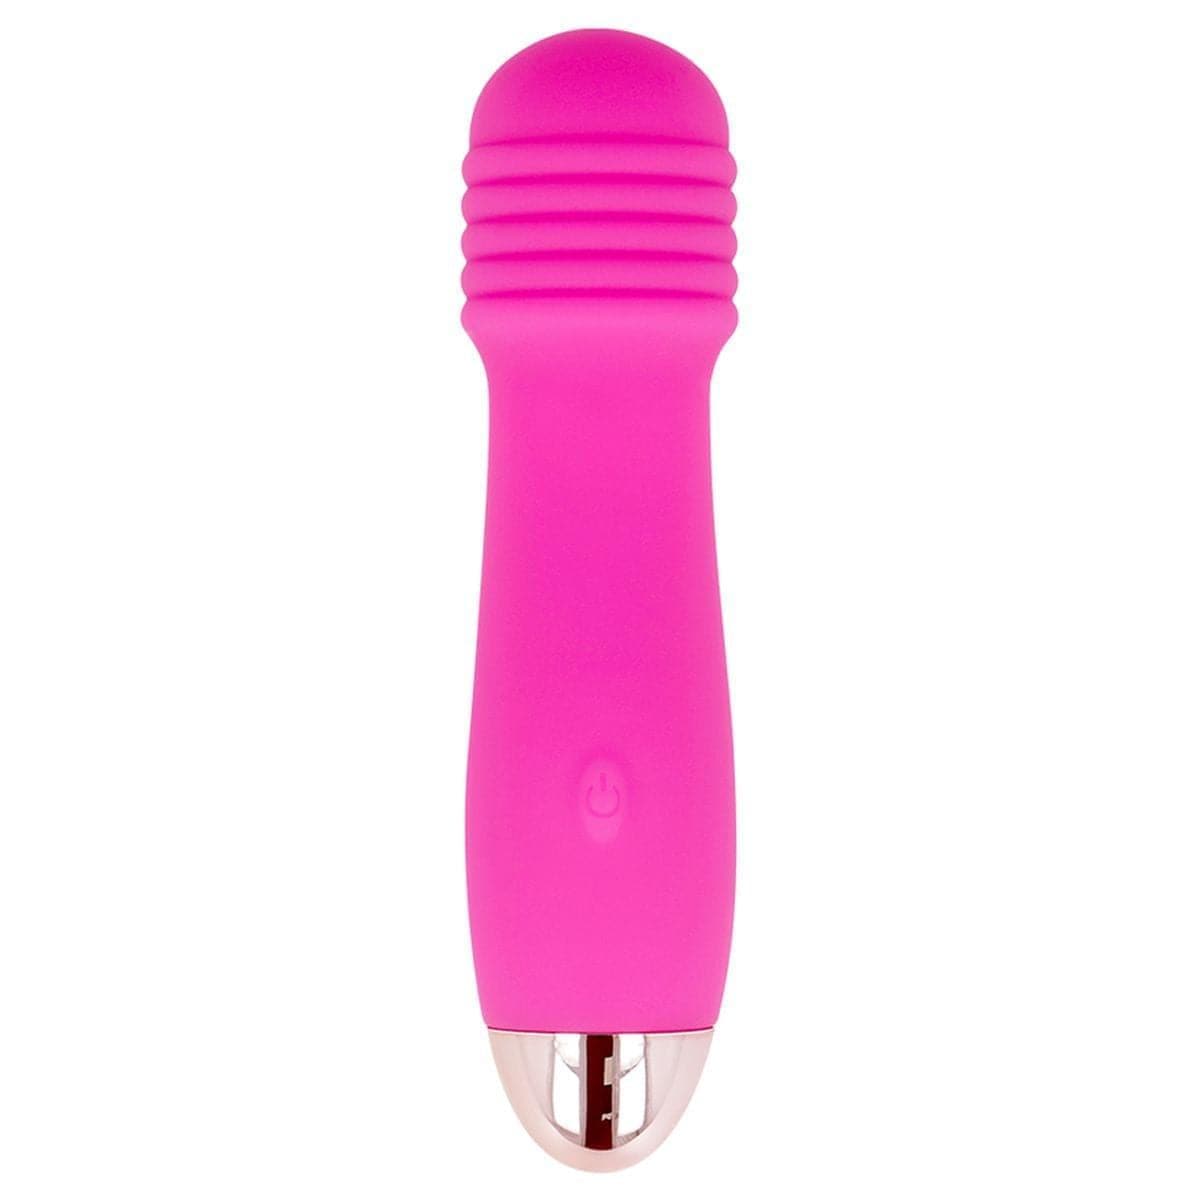 Mini Vibrador Dolce Vita 3 Rosa USB, 12.2cm Ø2.8cm, 7vibrações - Pérola SexShop